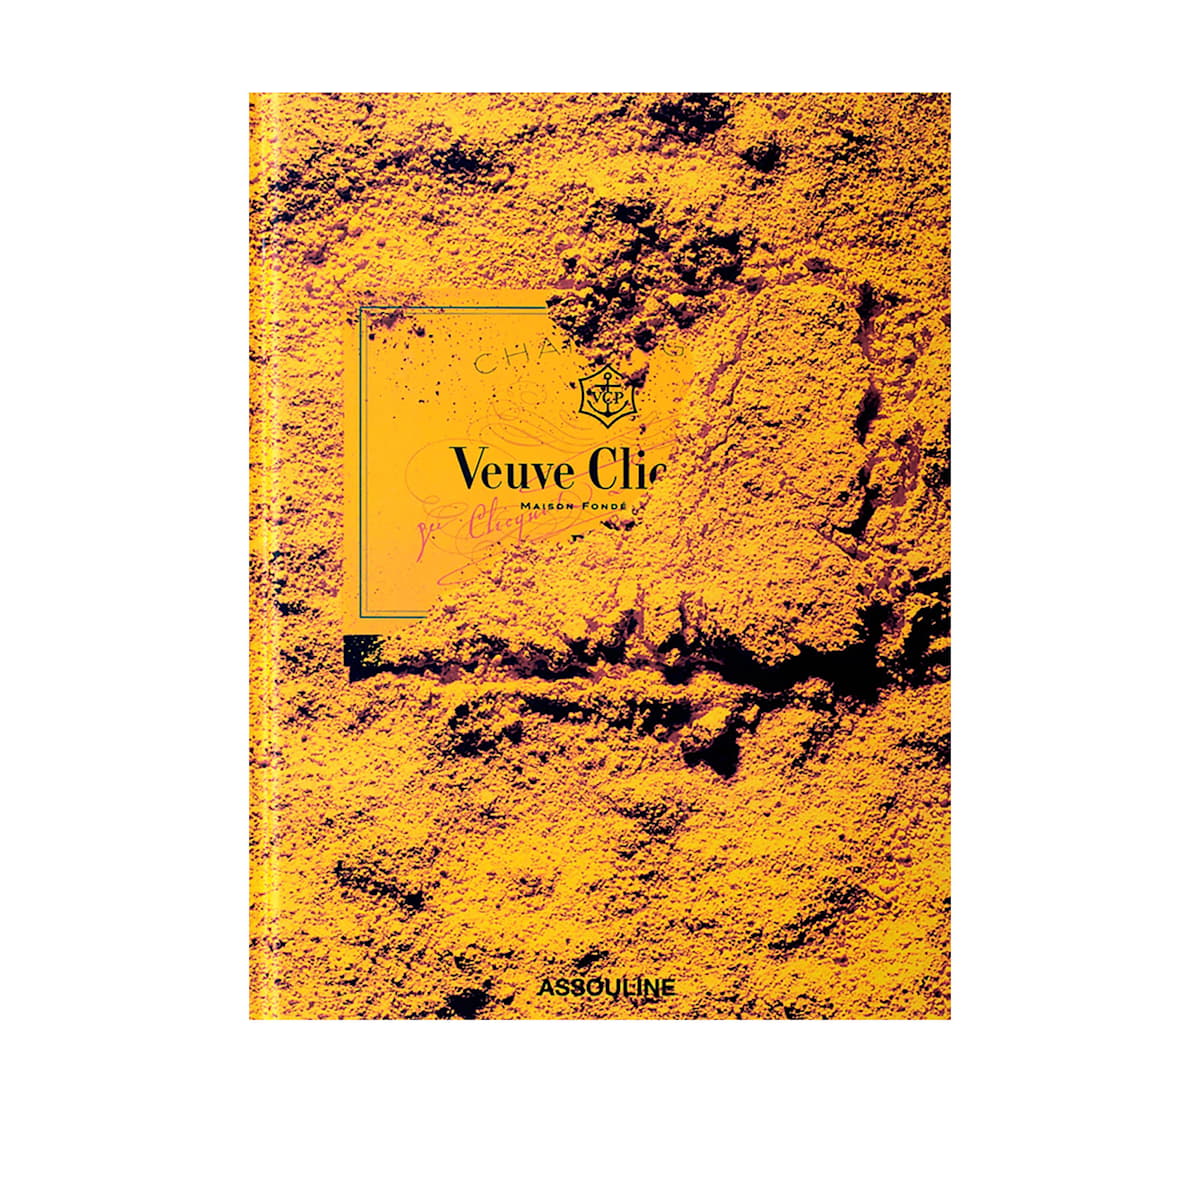 Veuve Clicquot - New Mags